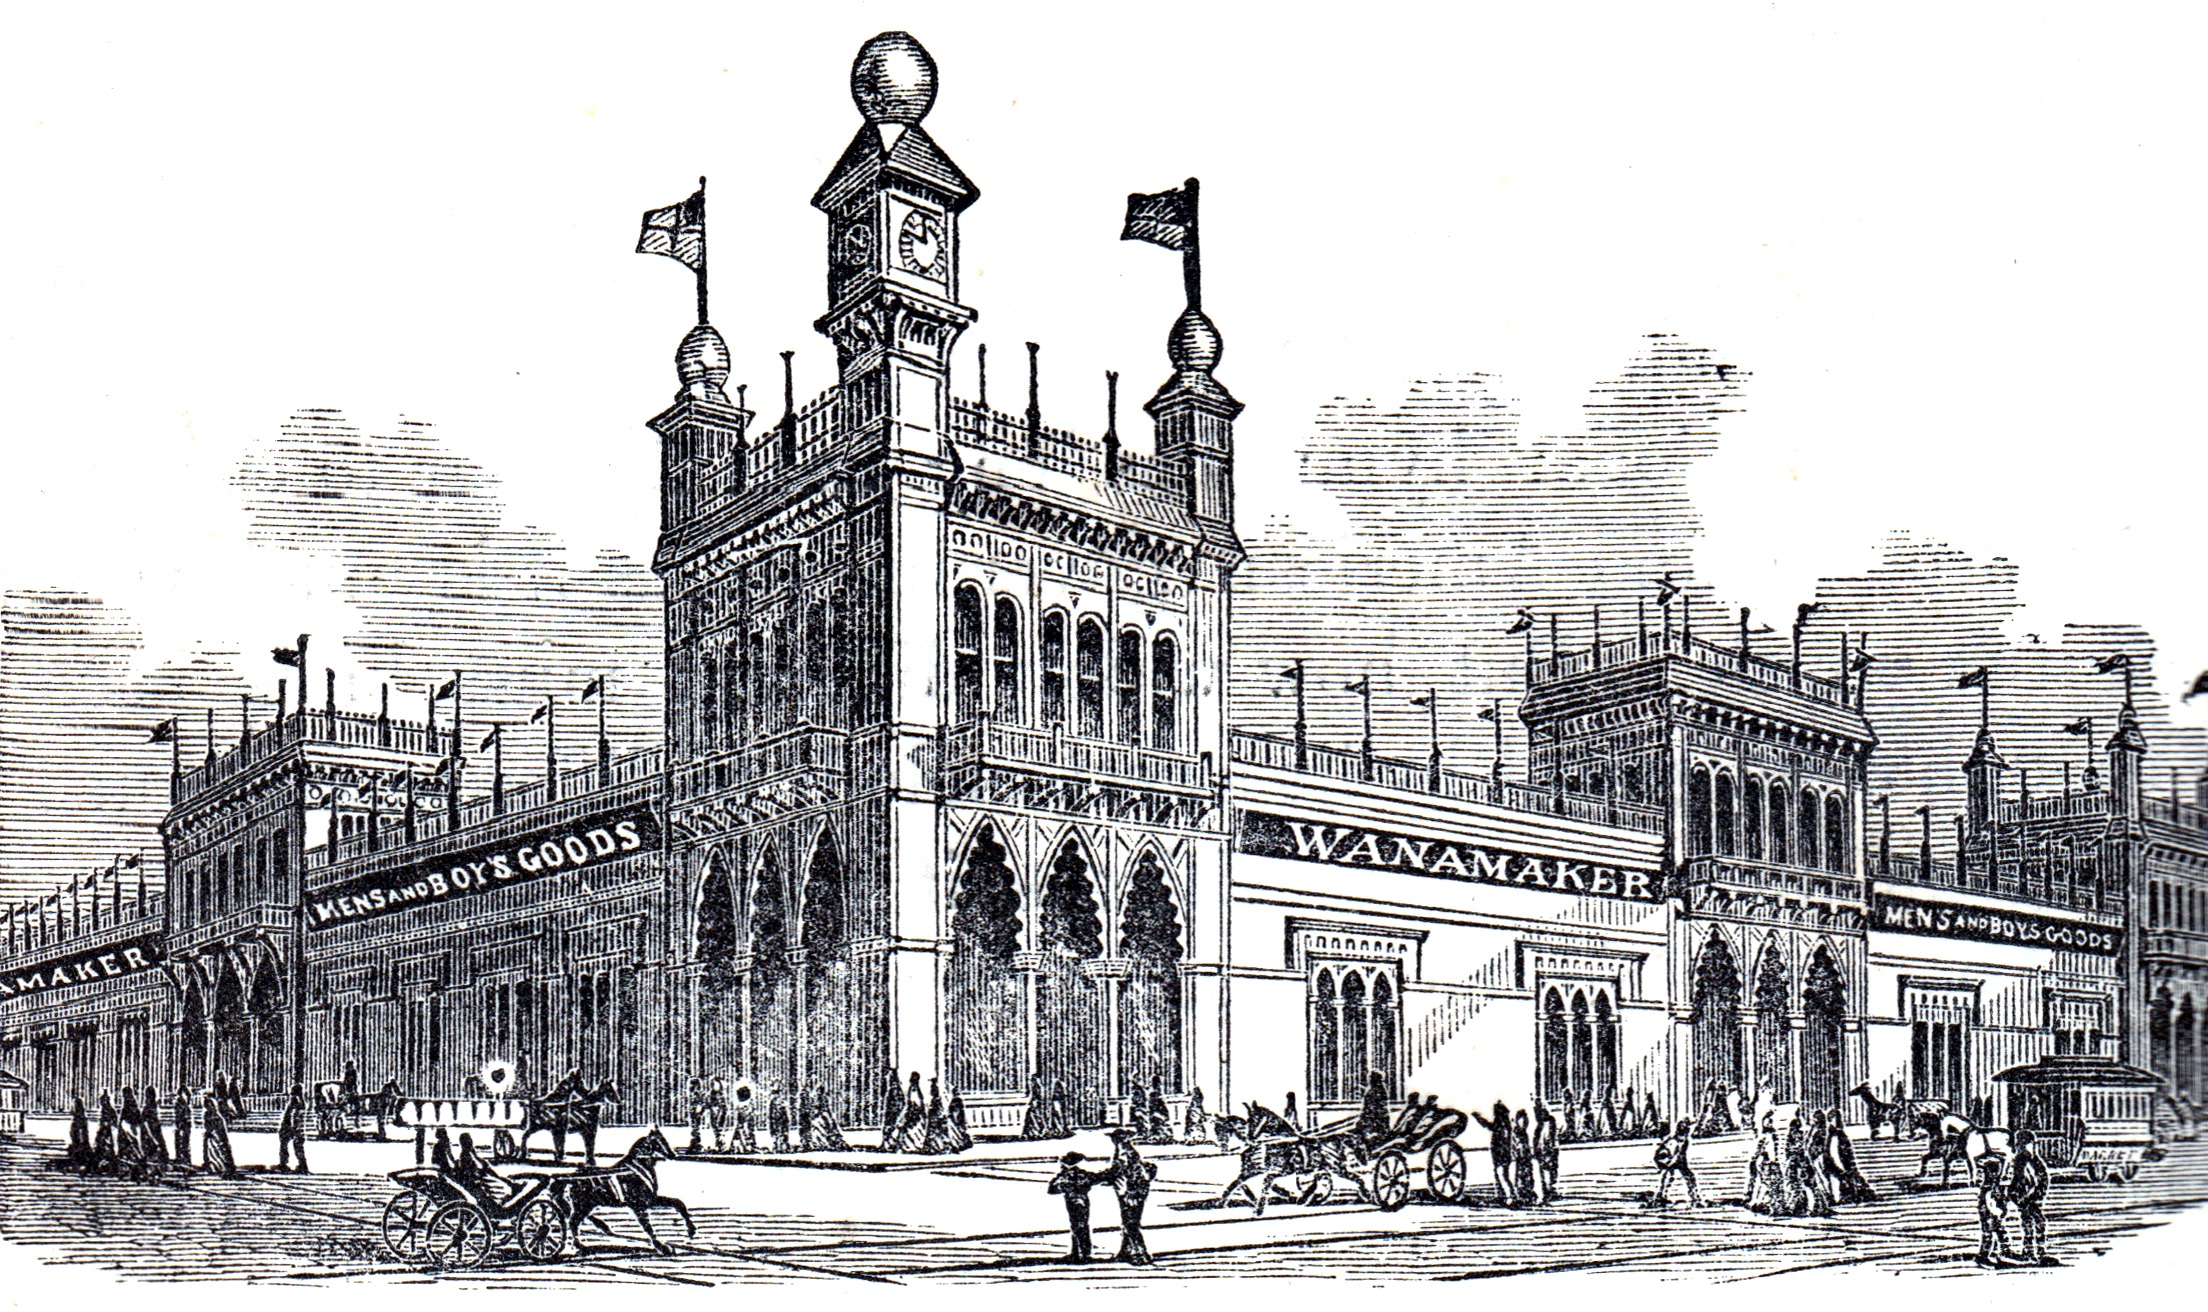 John Wanamaker's on Market Street in 1876